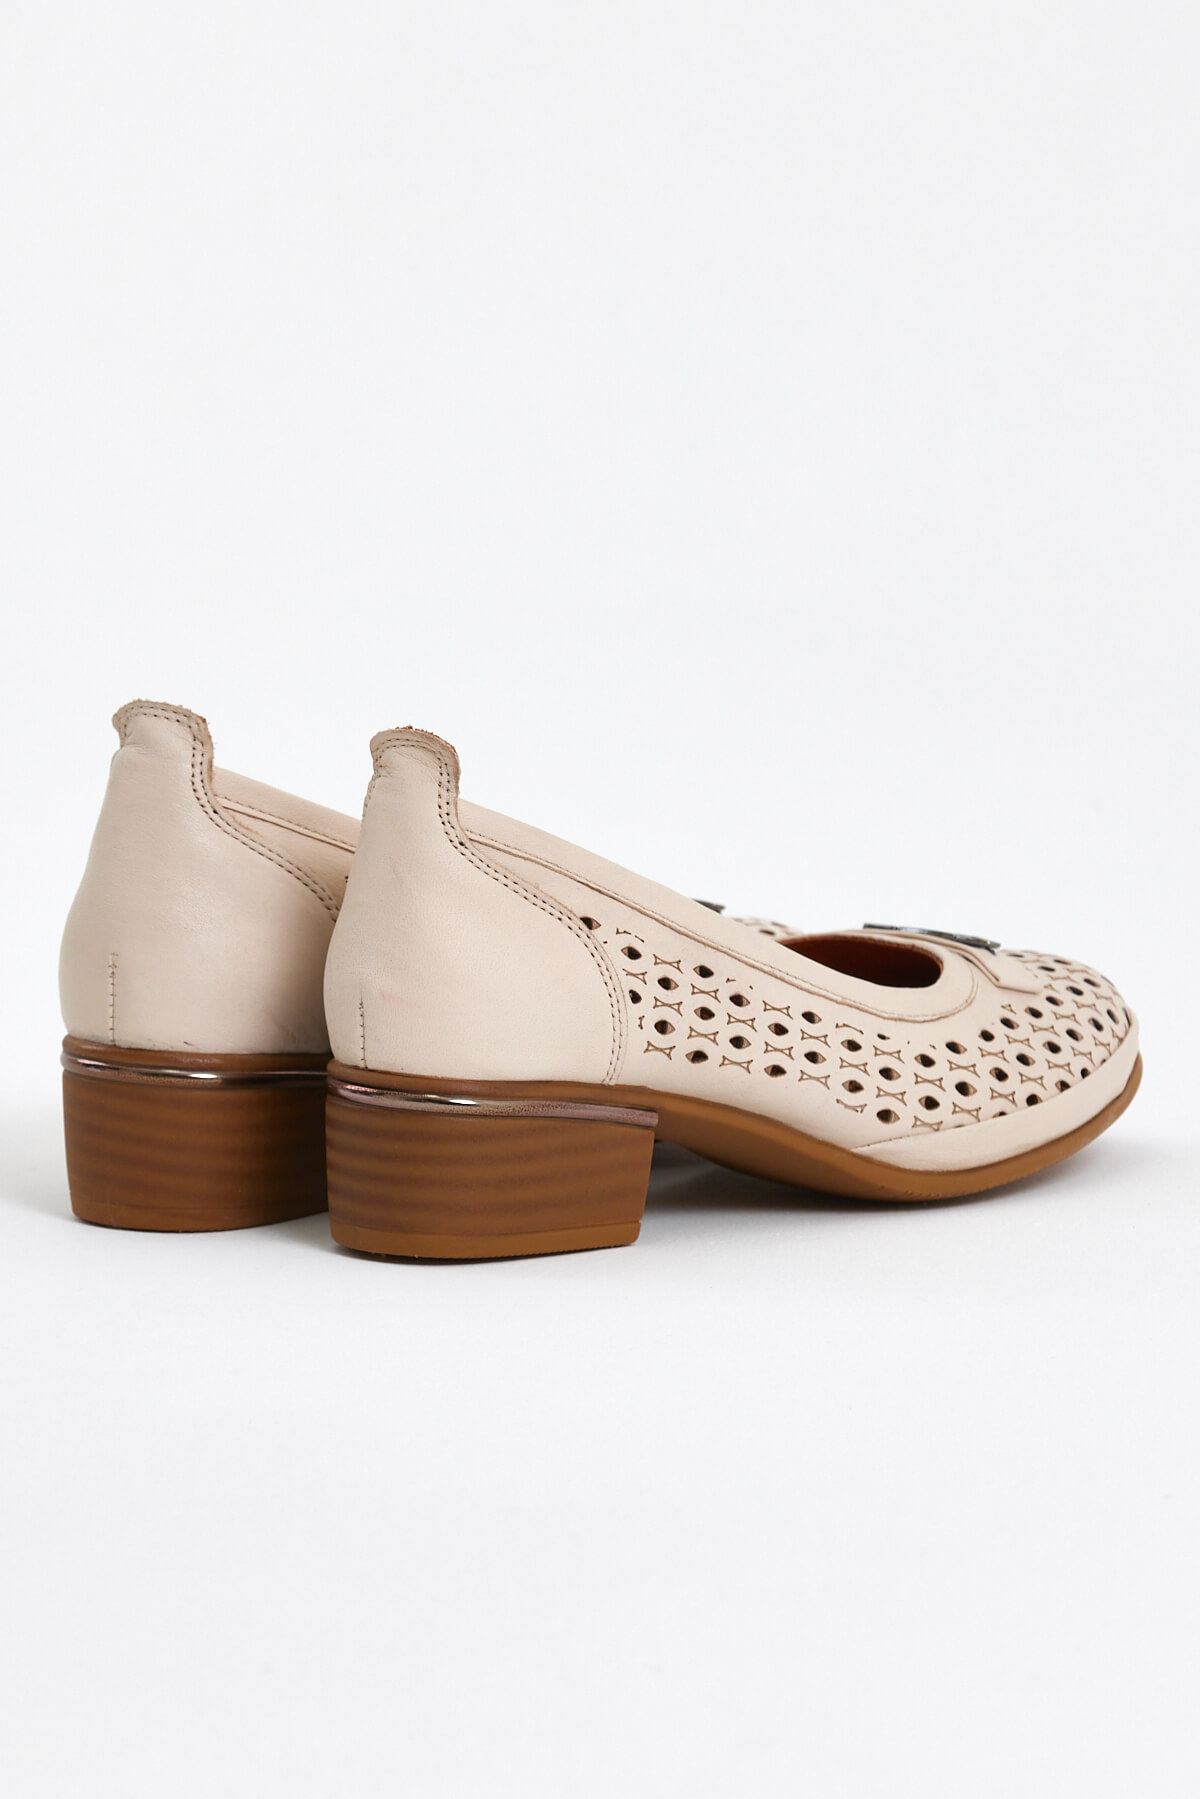 Kadın Topuklu Deri Ayakkabı Bej 2312502Y - Thumbnail